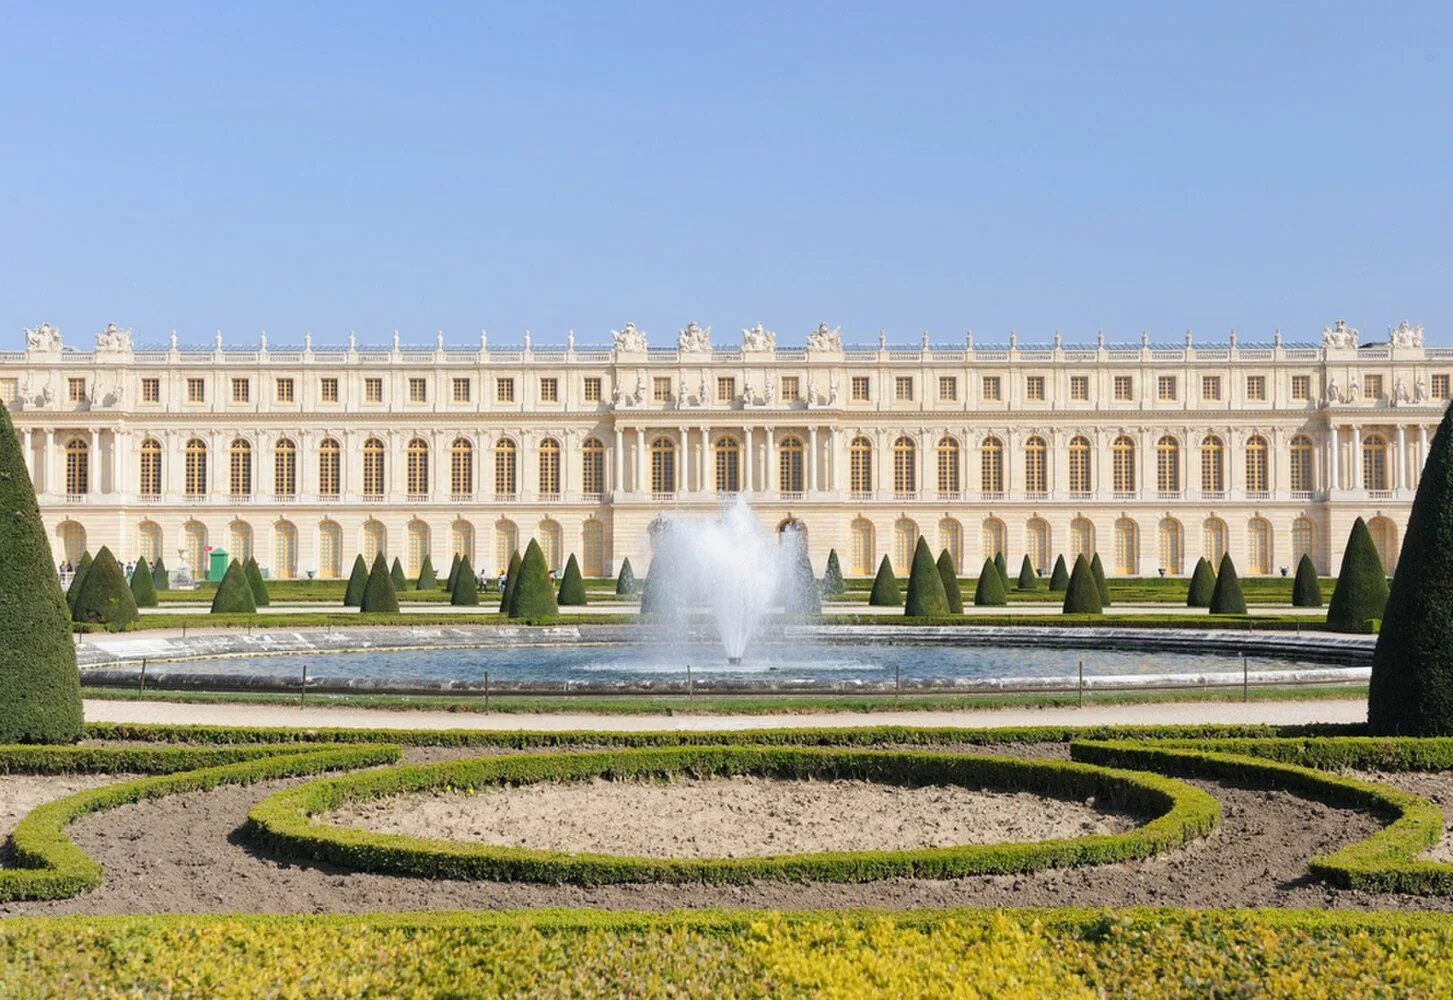 Chateau de versailles. Версальский дворец. Версаль. Версальский дворцово-парковый комплекс, Франция. Королевский дворец в Версале. Дворец и парк в Версале Франция.